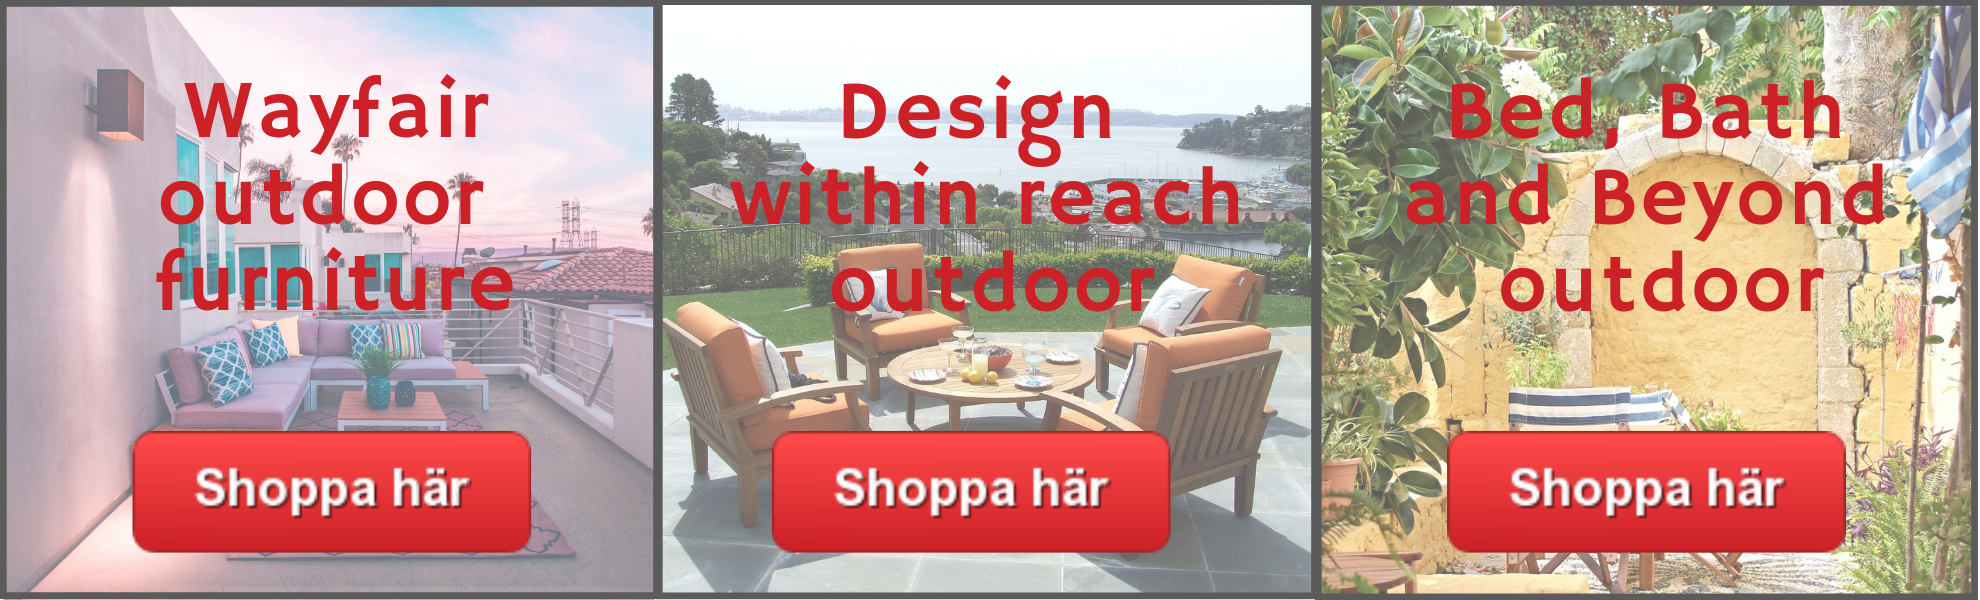 Utemöbler billigt och trädgårdsmöbler från amerikanske webshops hem till Sverige